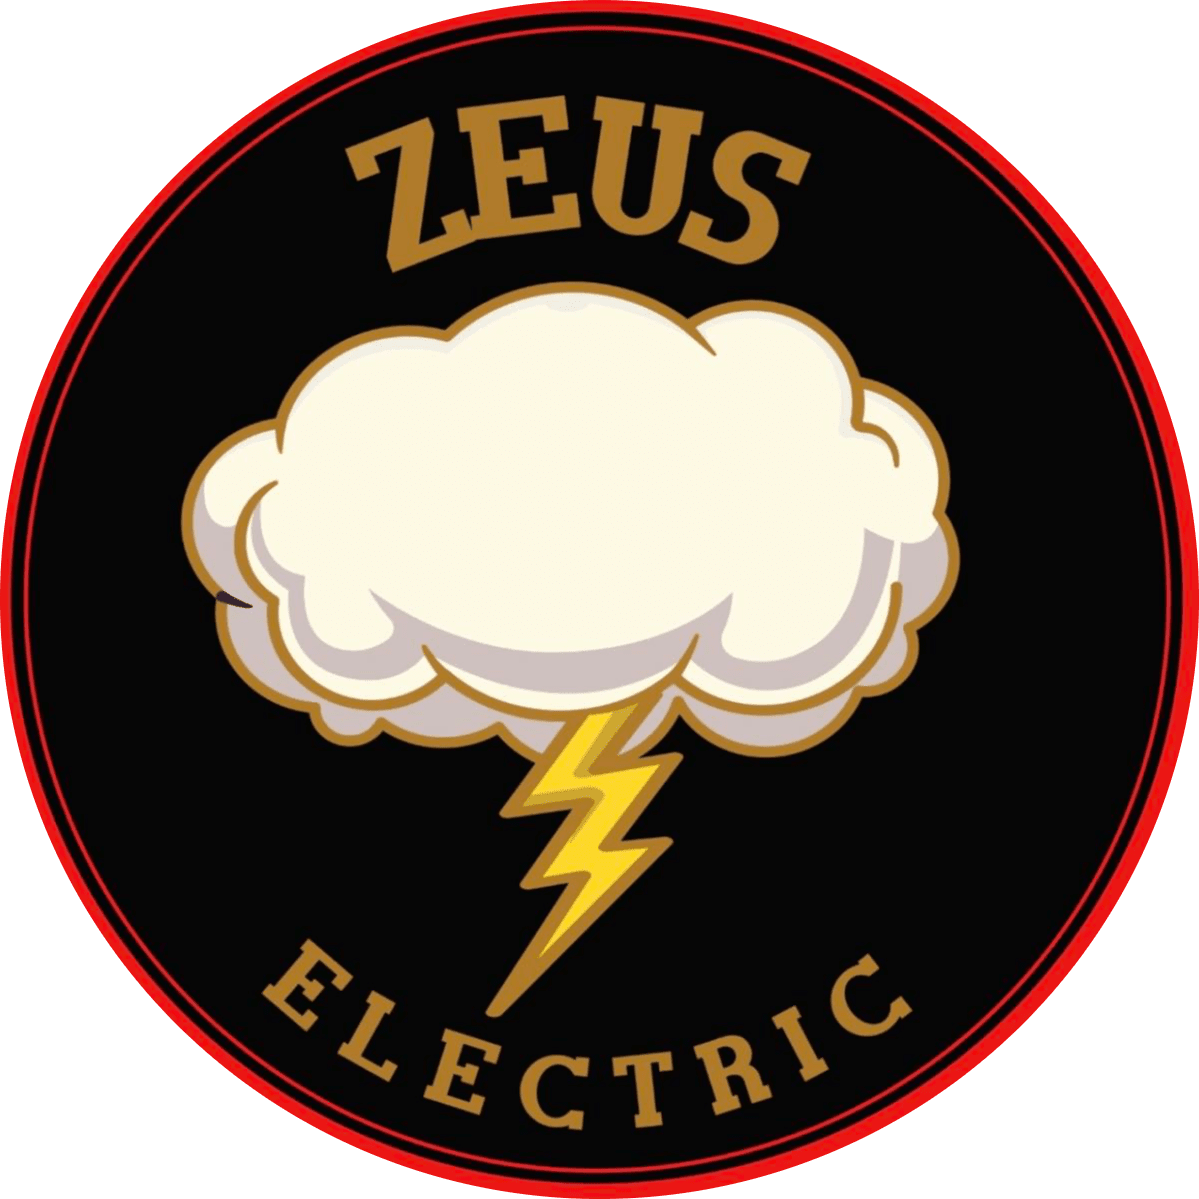 Zeus Electric